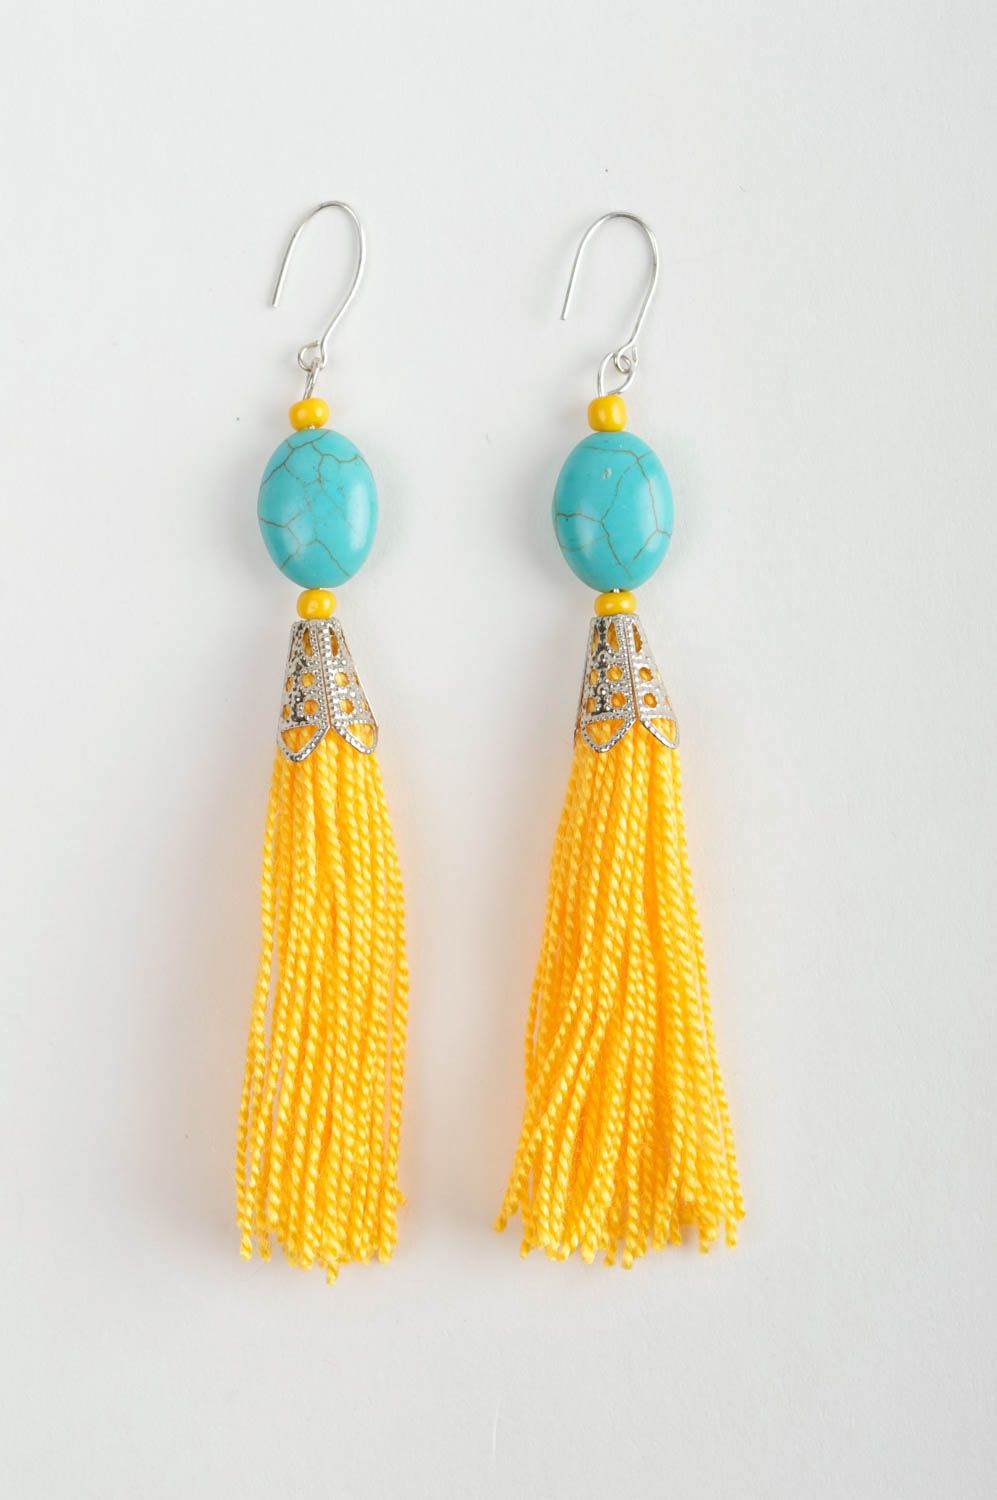 Boucles d'oreilles Collier fait main jaune bleu ciel Bijoux fantaisie textiles photo 5